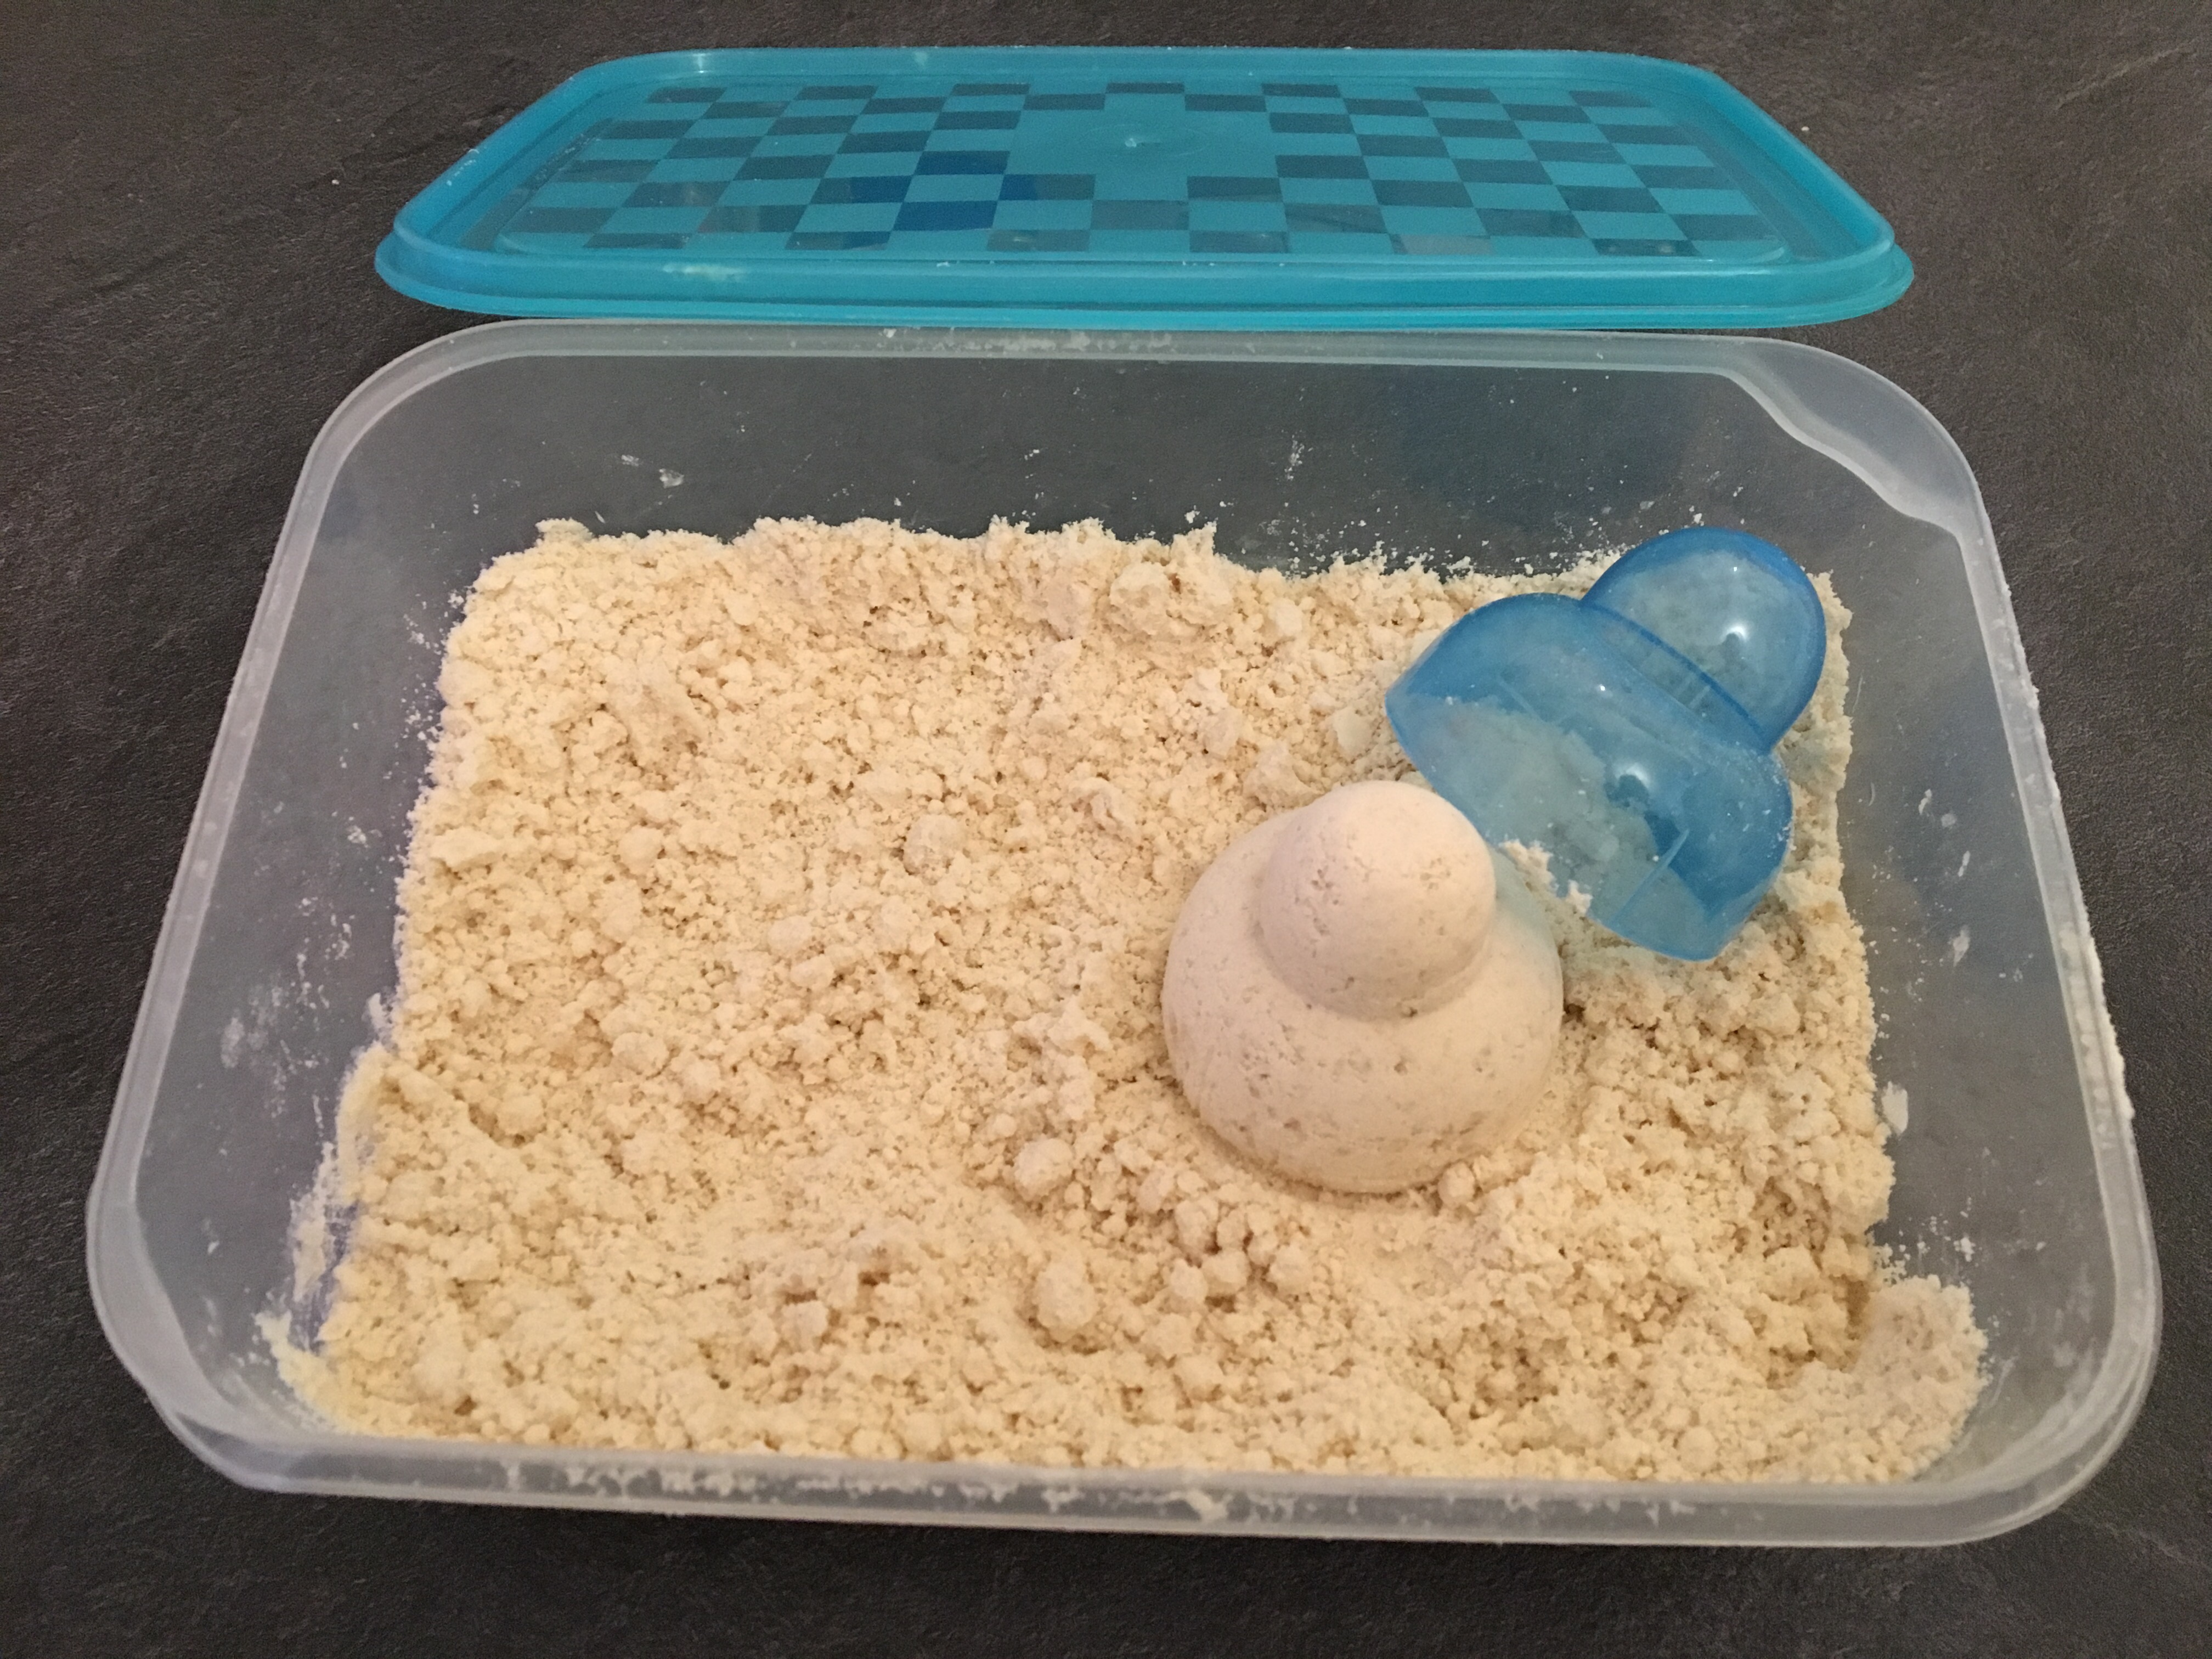 Notre recette de sable magique maison à faire en famille